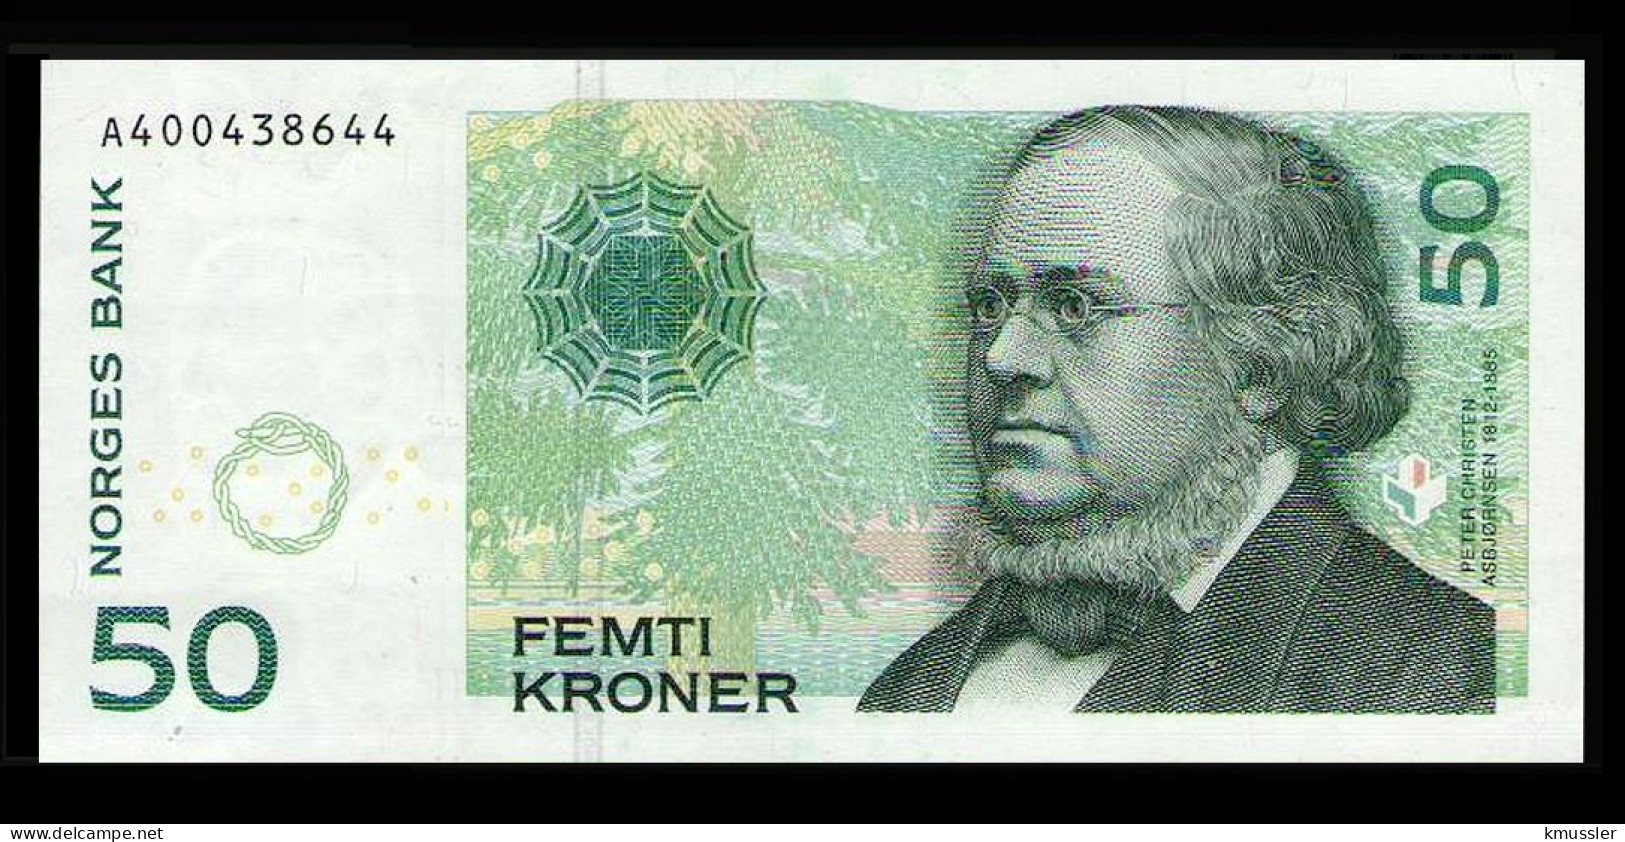 # # # Banknote Norwegen (Norway) 50 Kroner 2011 UNC # # # - Norway